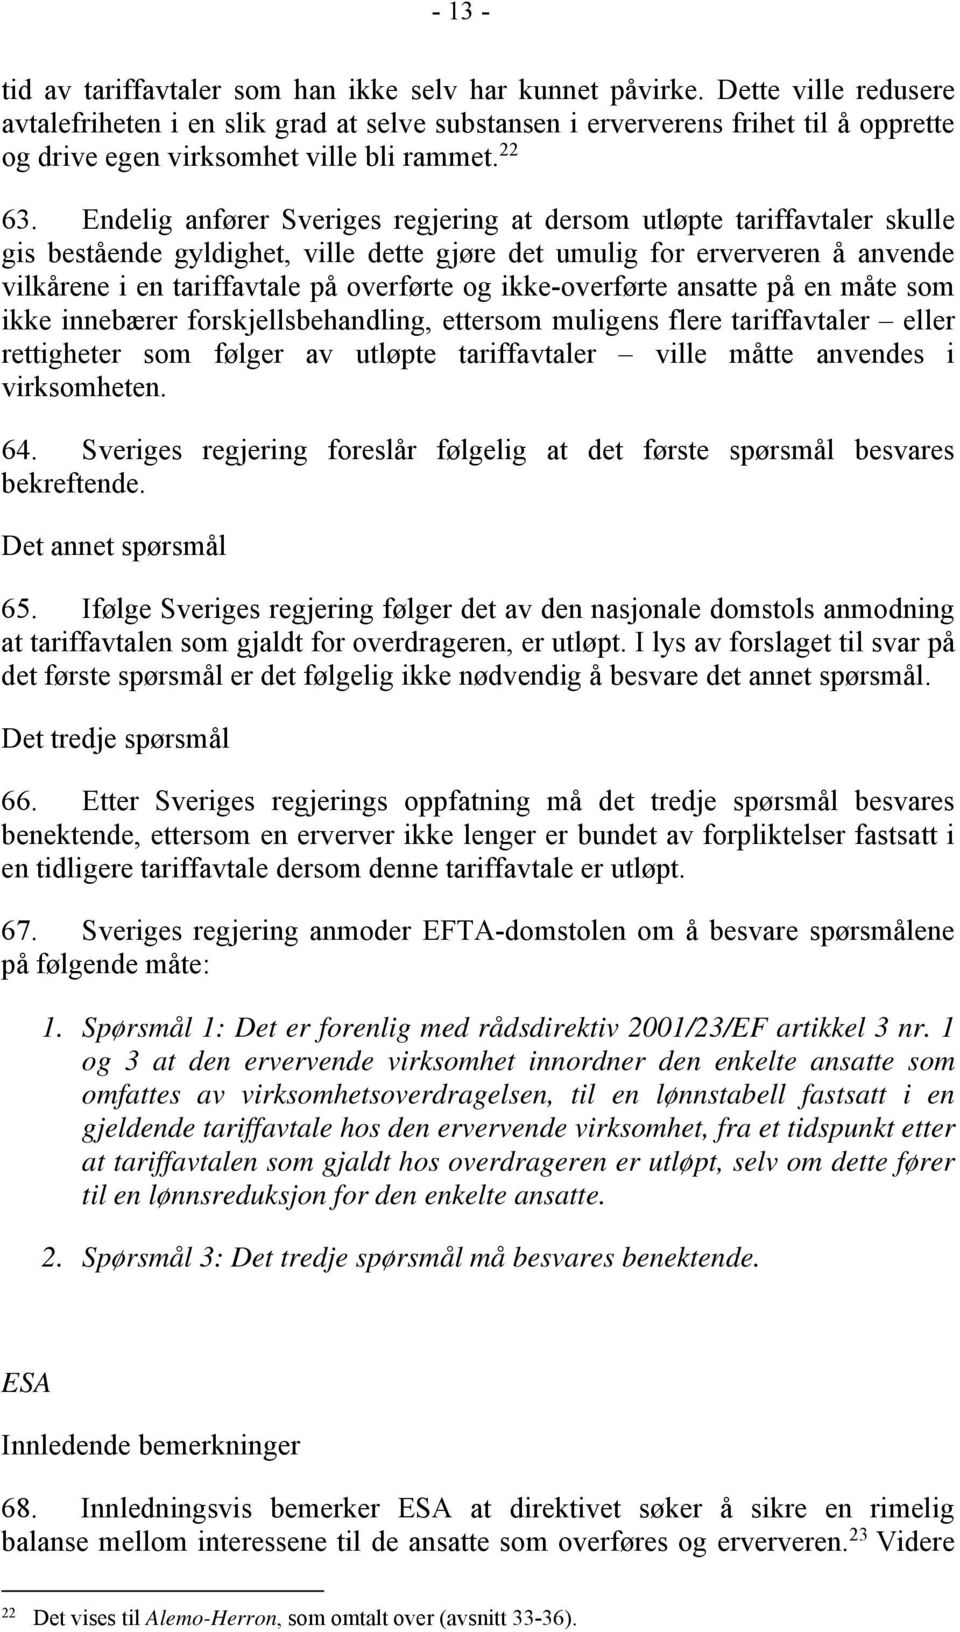 Endelig anfører Sveriges regjering at dersom utløpte tariffavtaler skulle gis bestående gyldighet, ville dette gjøre det umulig for erververen å anvende vilkårene i en tariffavtale på overførte og